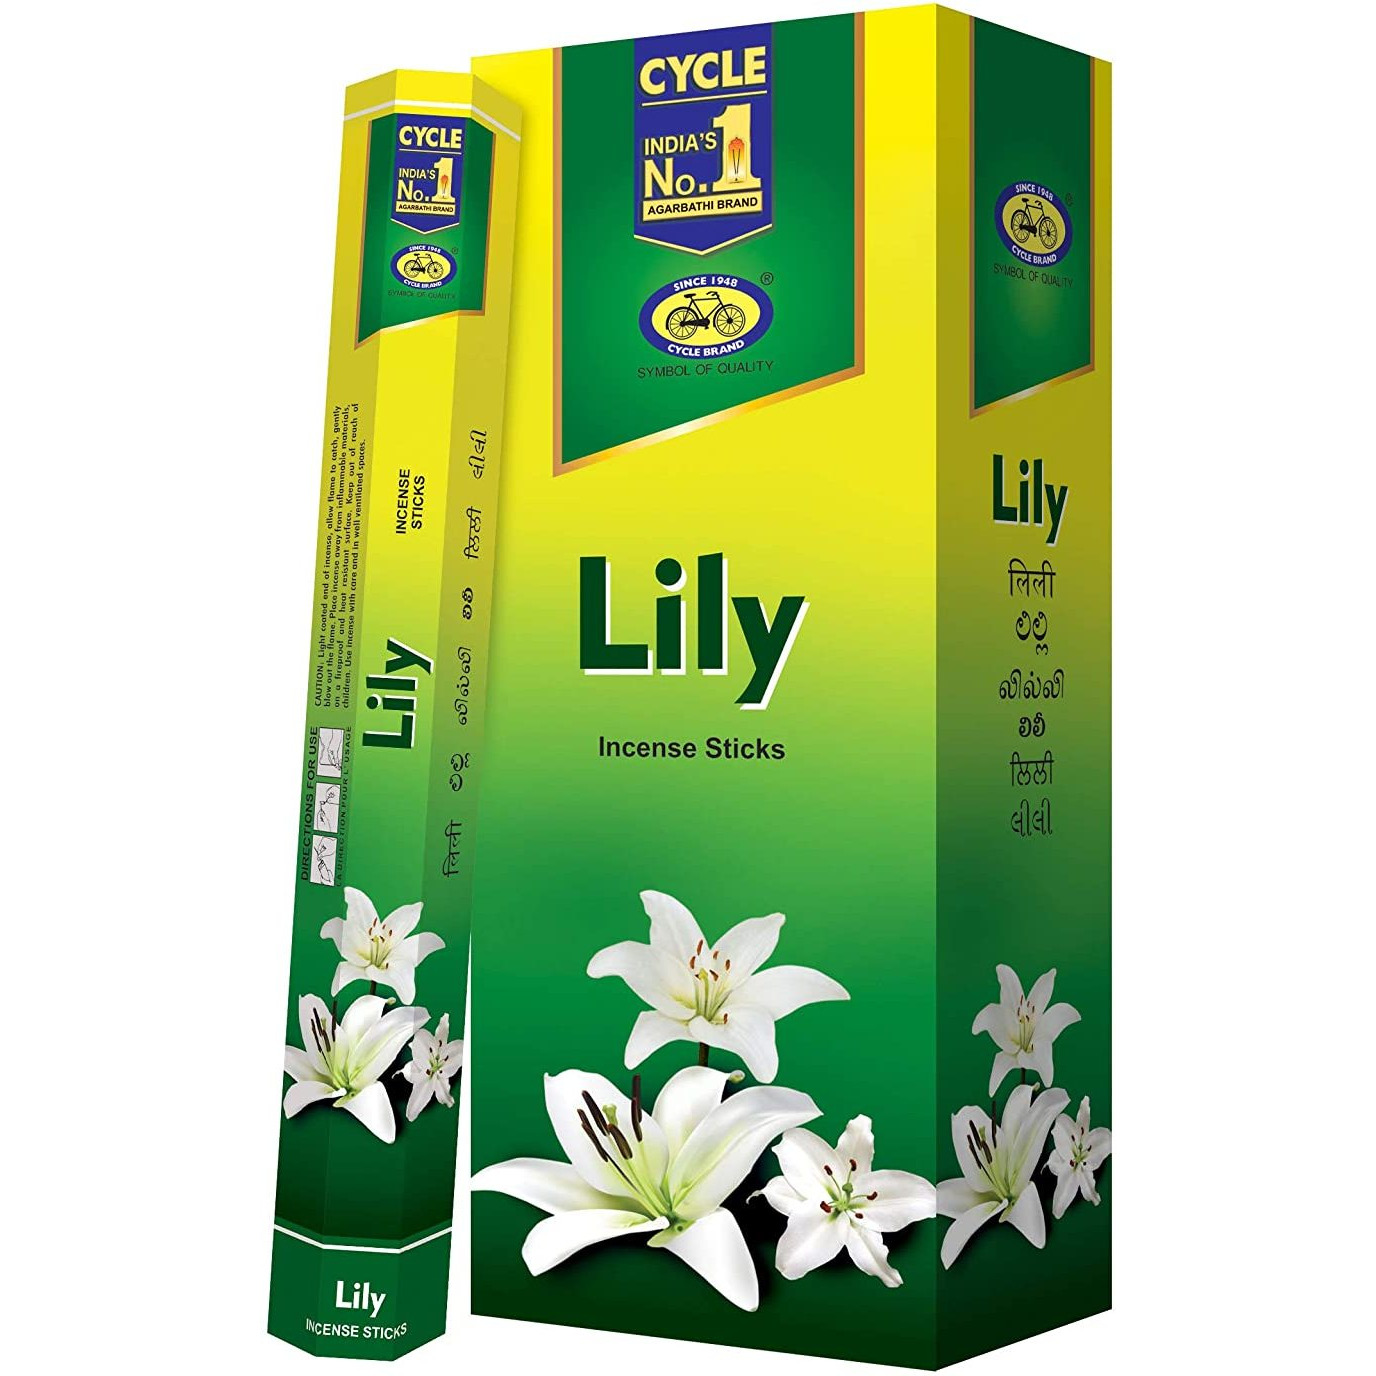 Case of 12 - Cycle No 1 Lily Agarbatti Incense Sticks - 120 Pc